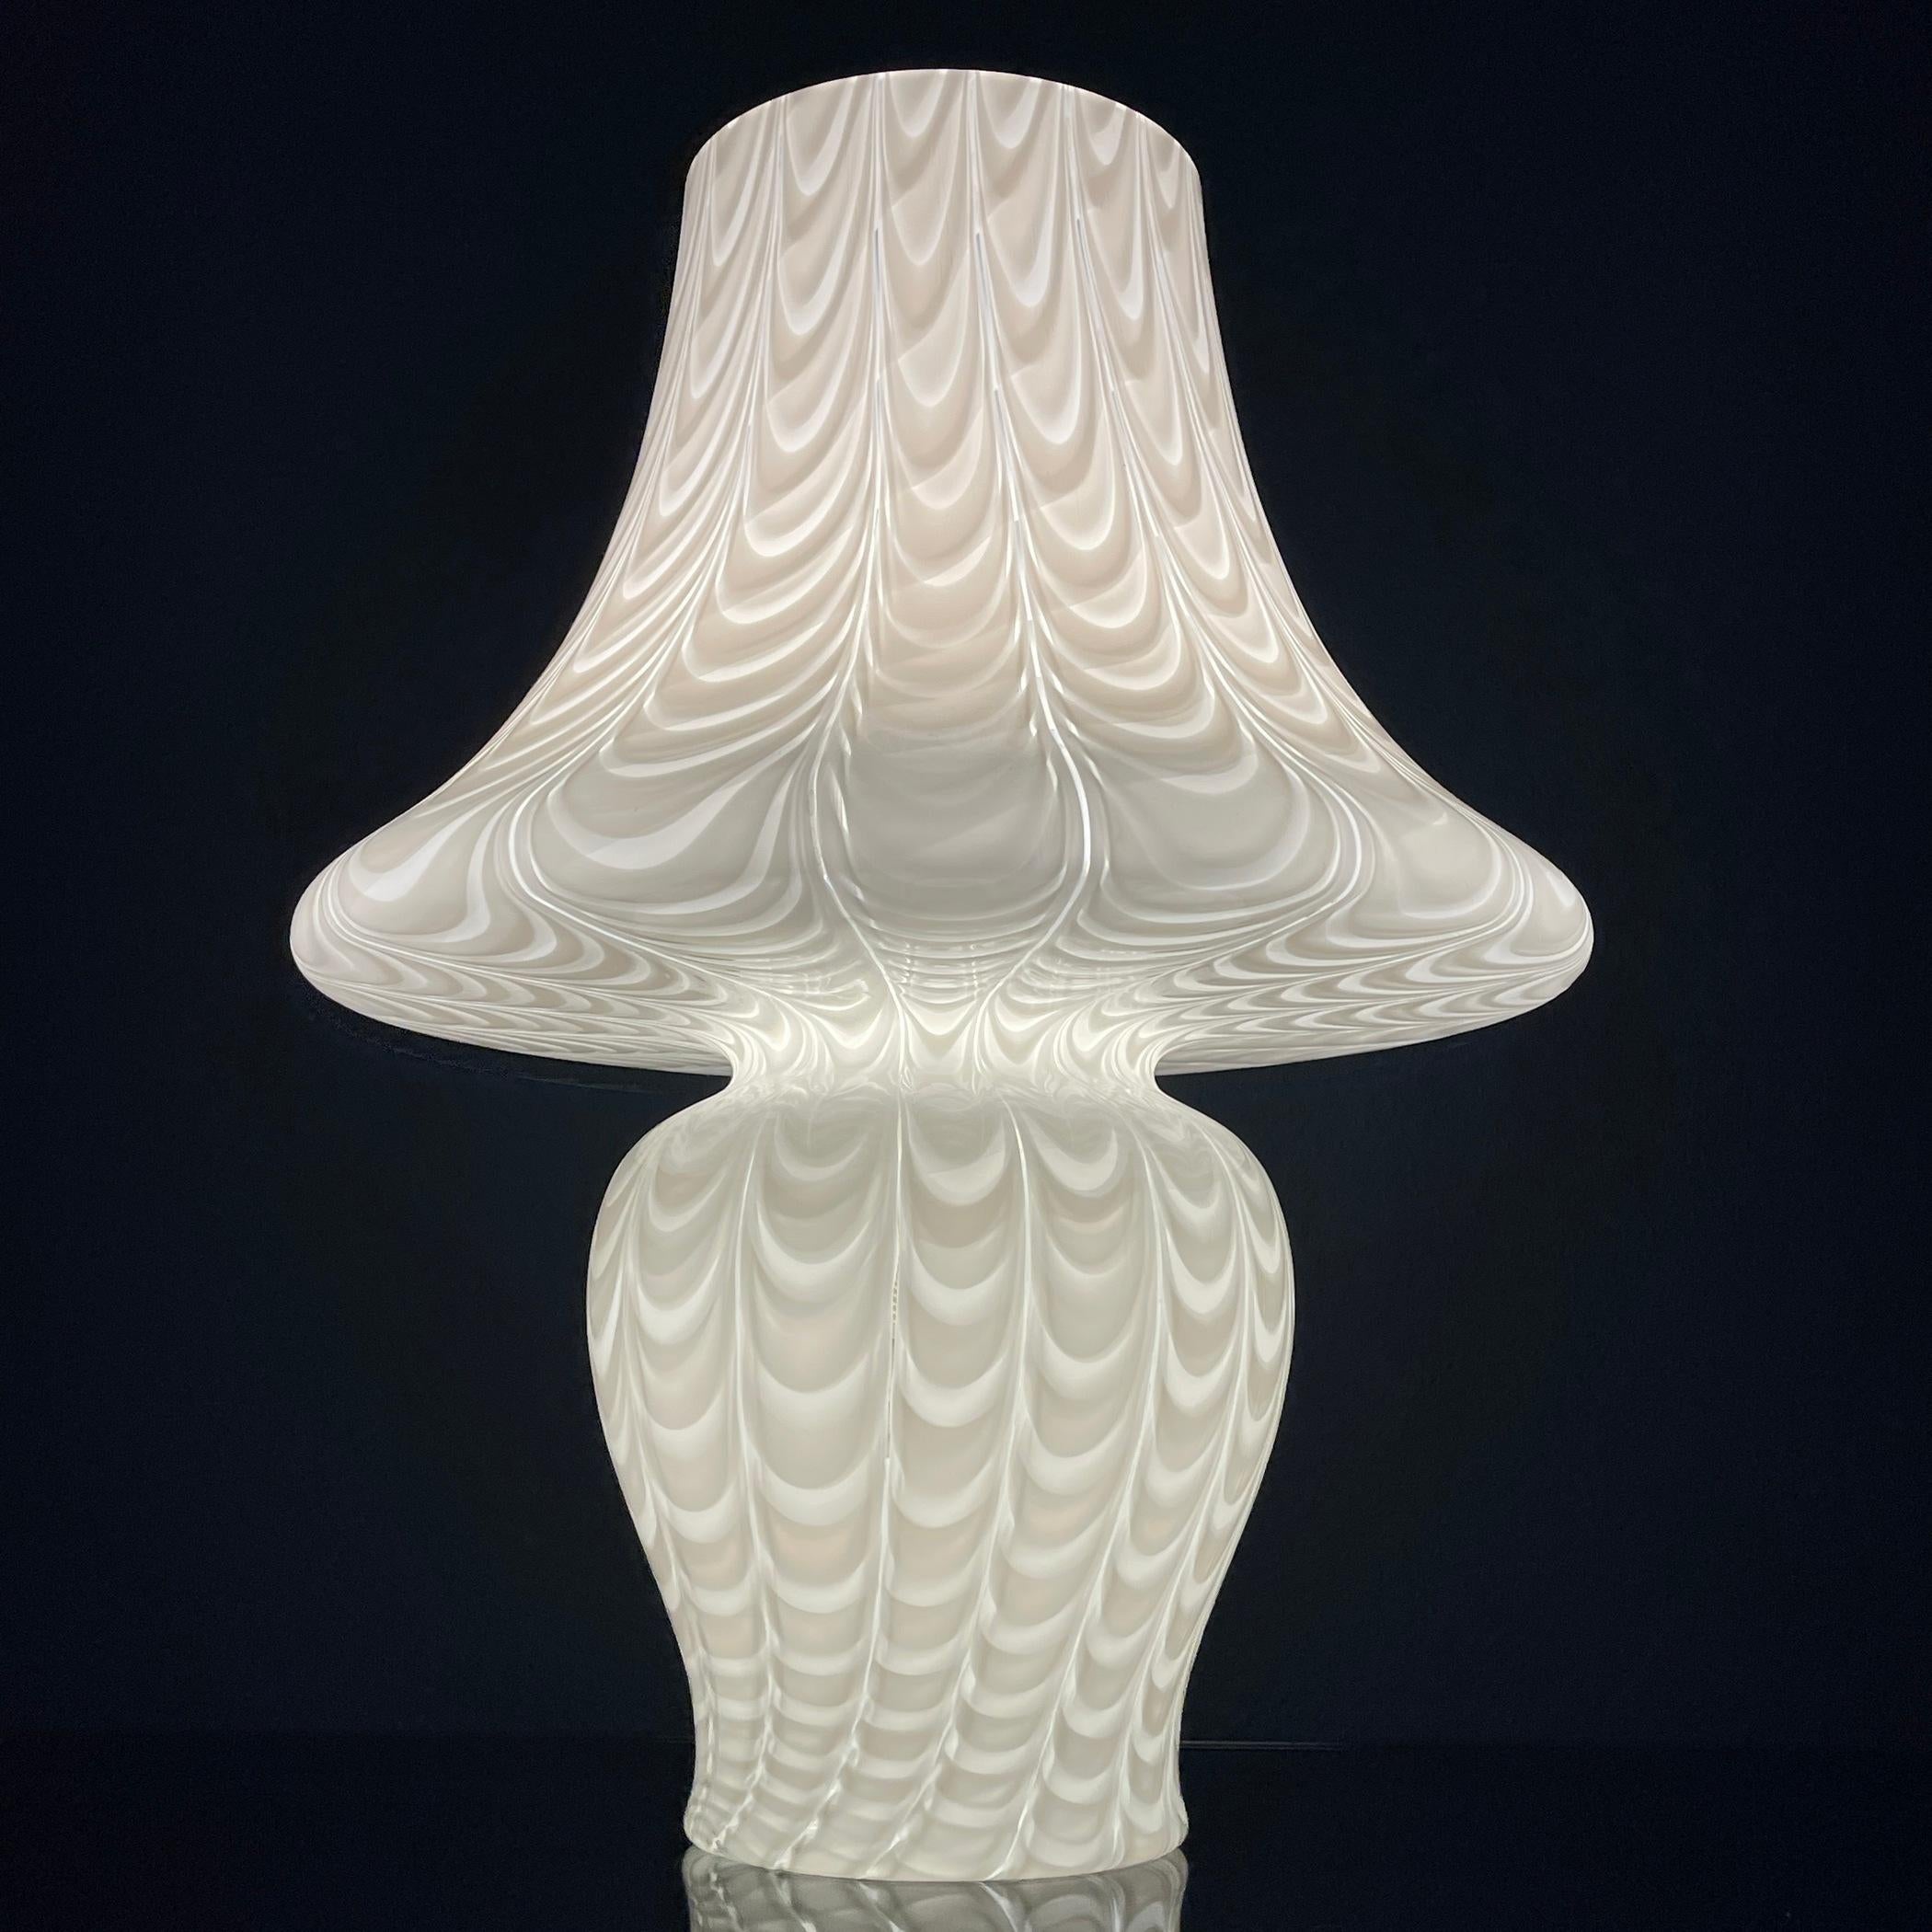 Introduisez une élégance intemporelle dans votre espace avec la grande lampe champignon classique blanche de Murano, au superbe motif de paon soufflé à la main, méticuleusement fabriquée en Italie dans les années 1970. Cette pièce exquise respire la